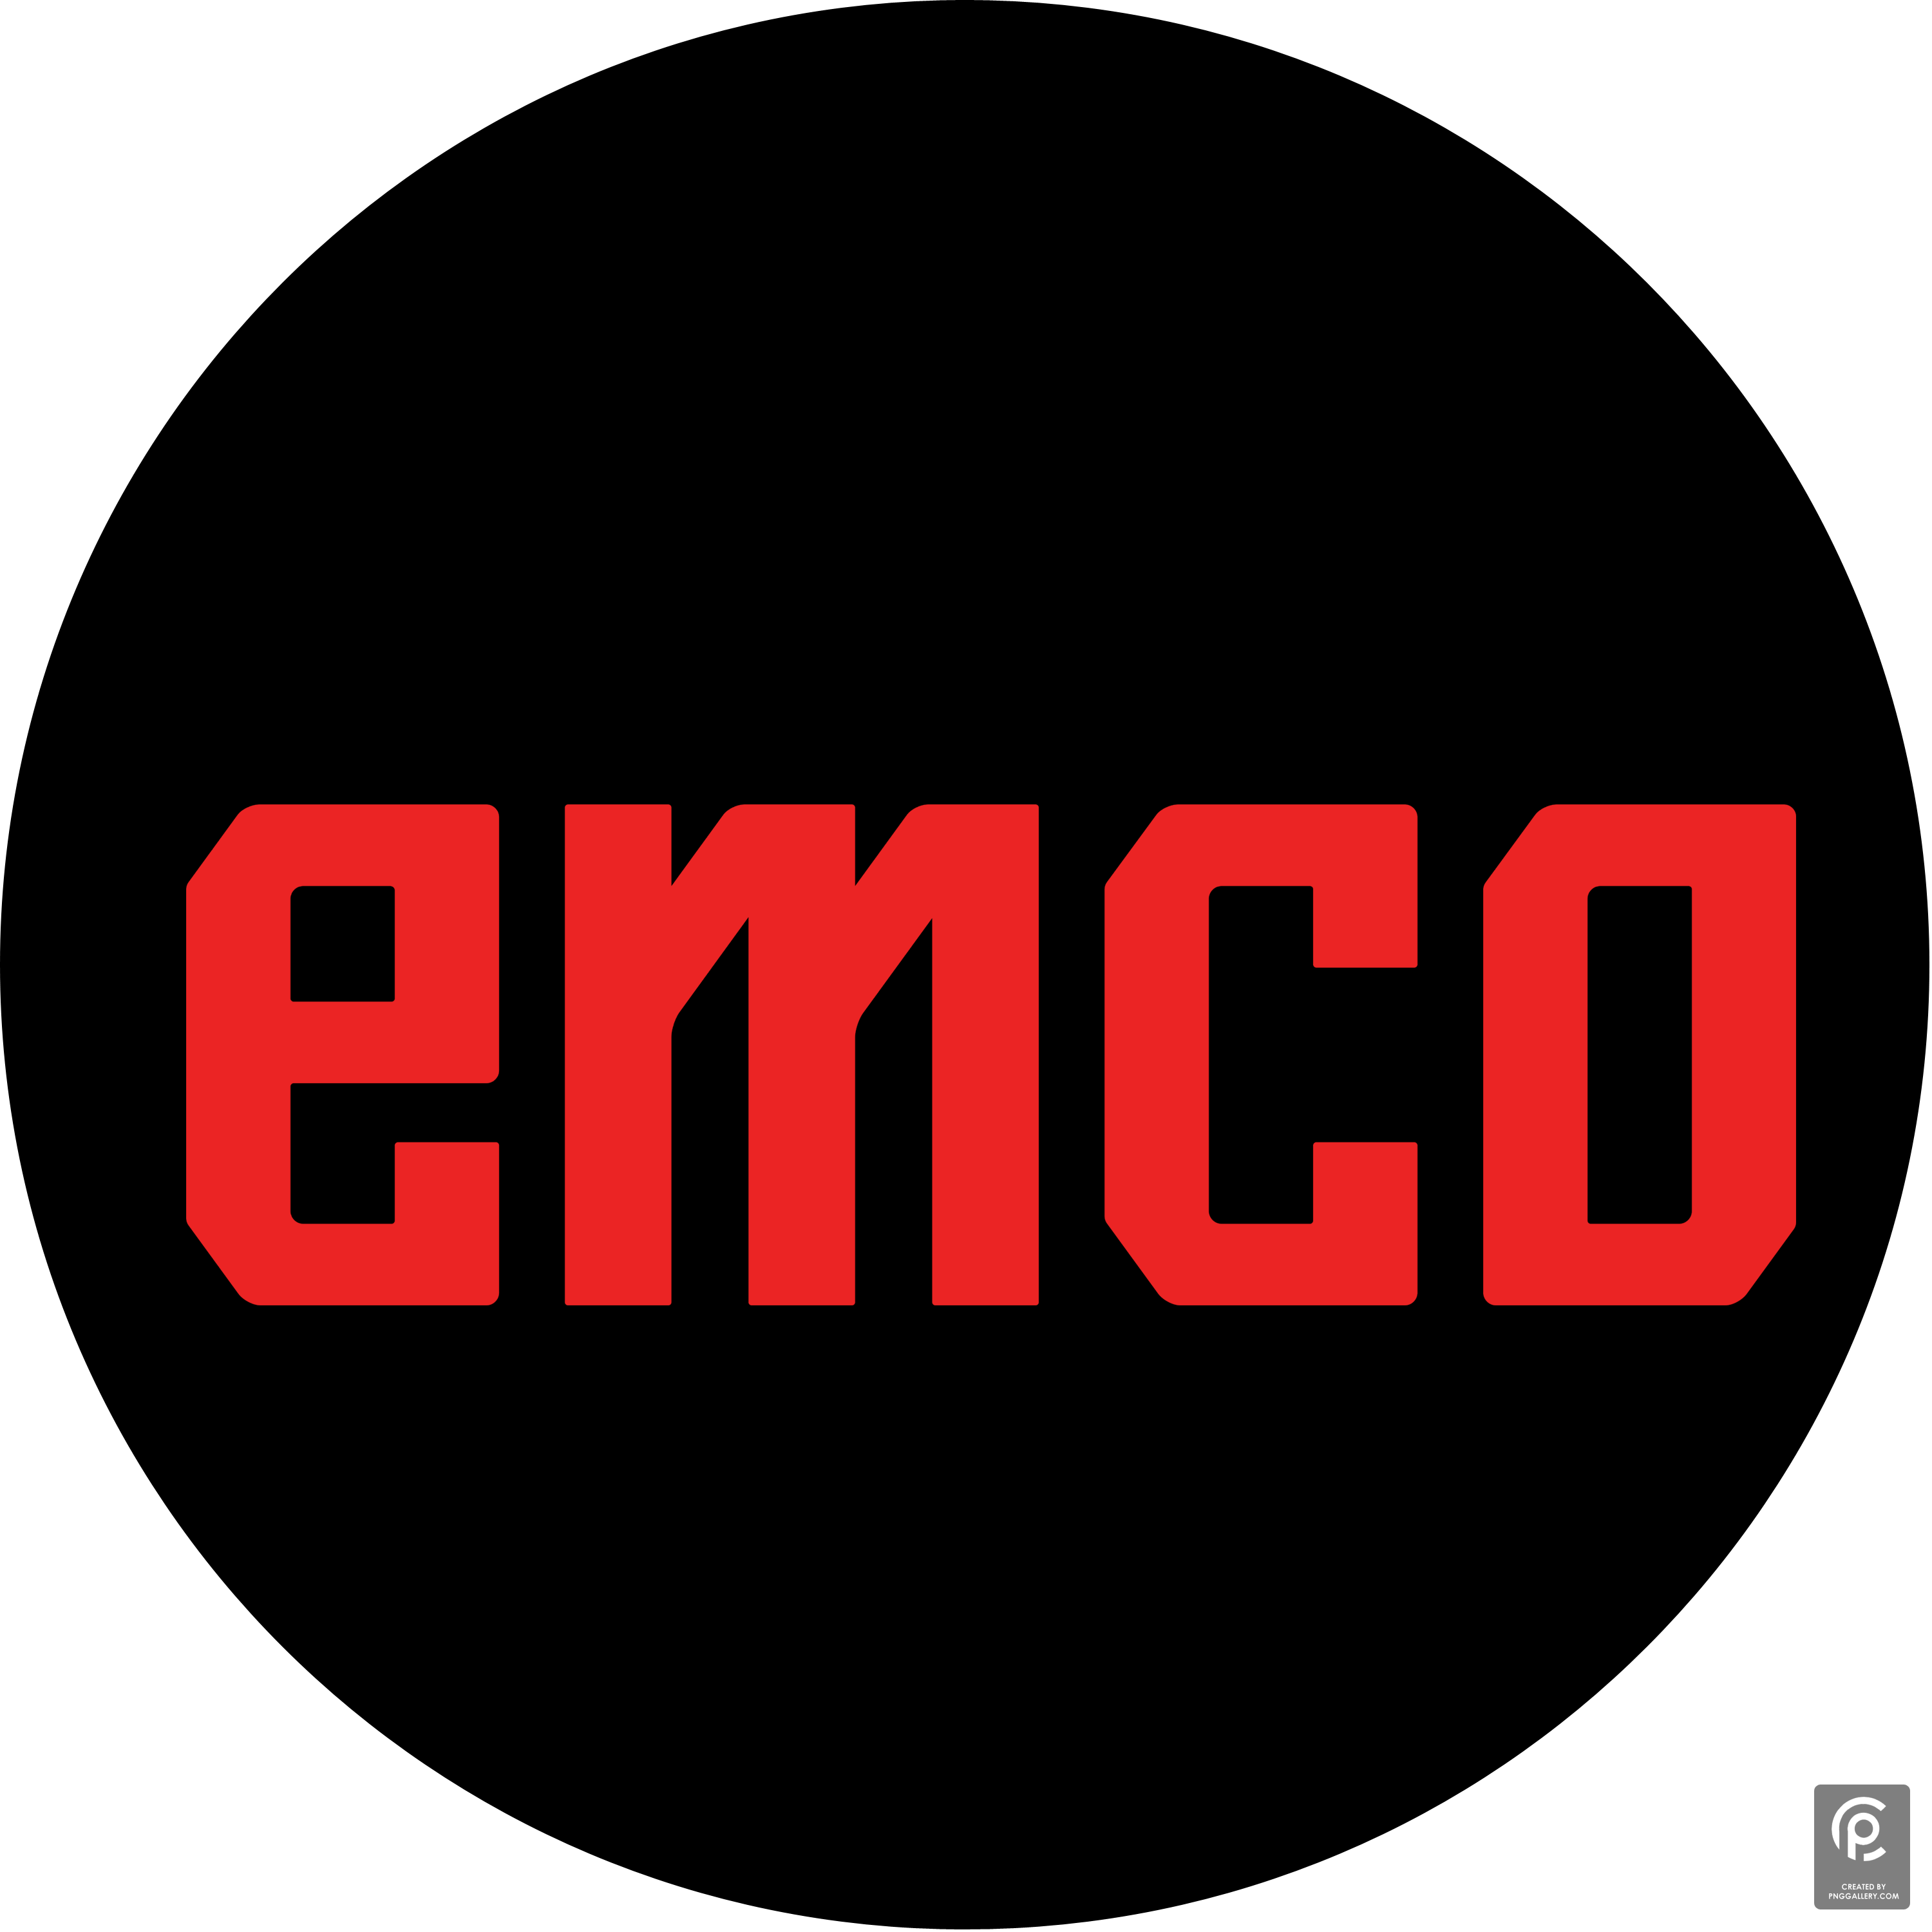 Emco Logo Transparent Gallery